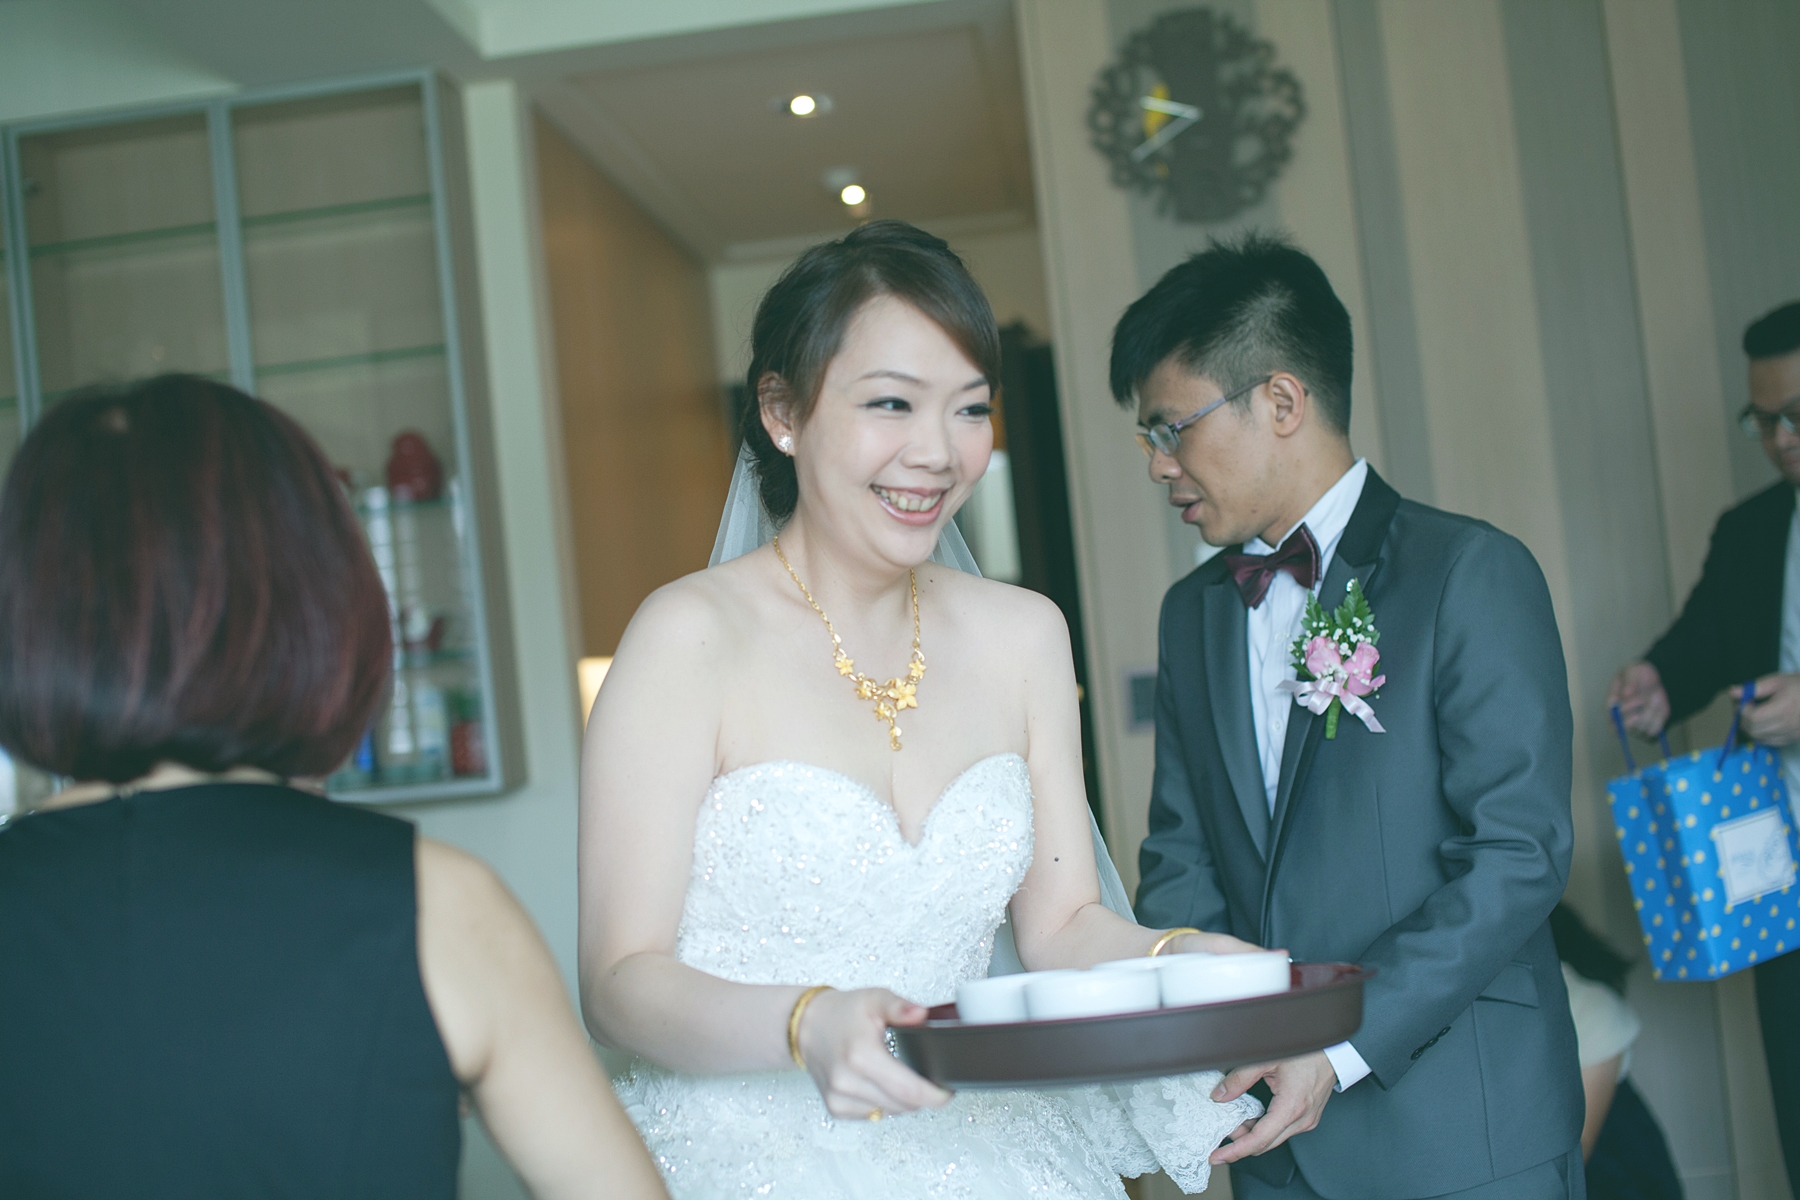 婚禮攝影,婚攝,婚禮記錄,台北,南港,雅悅會館,底片風格,自然